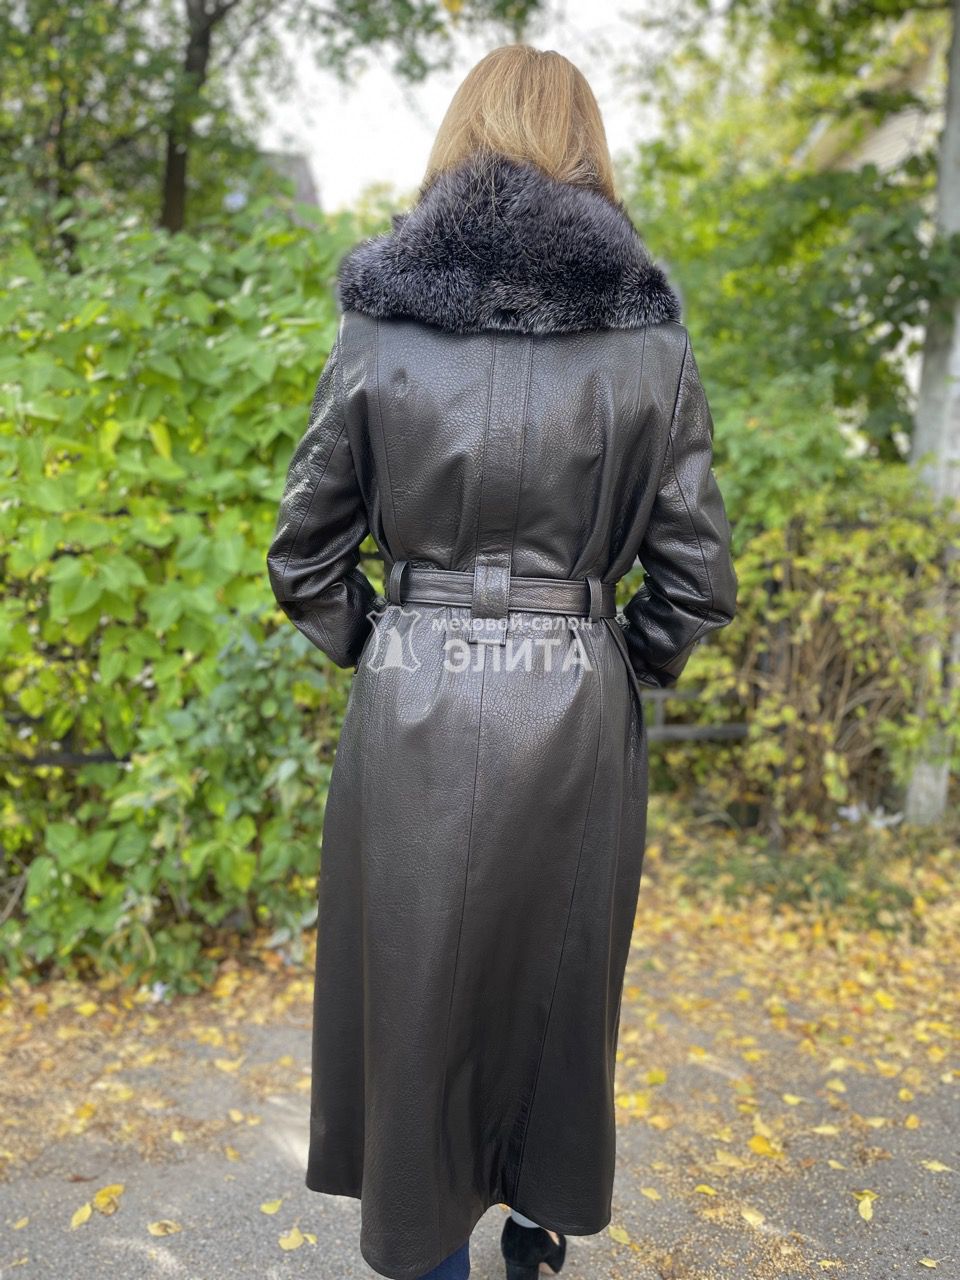 Кожаное пальто м-2758 р-р 46-54, цена 60000 рублей в интернет-магазине кожи и меха ЭЛИТА. Вид 2